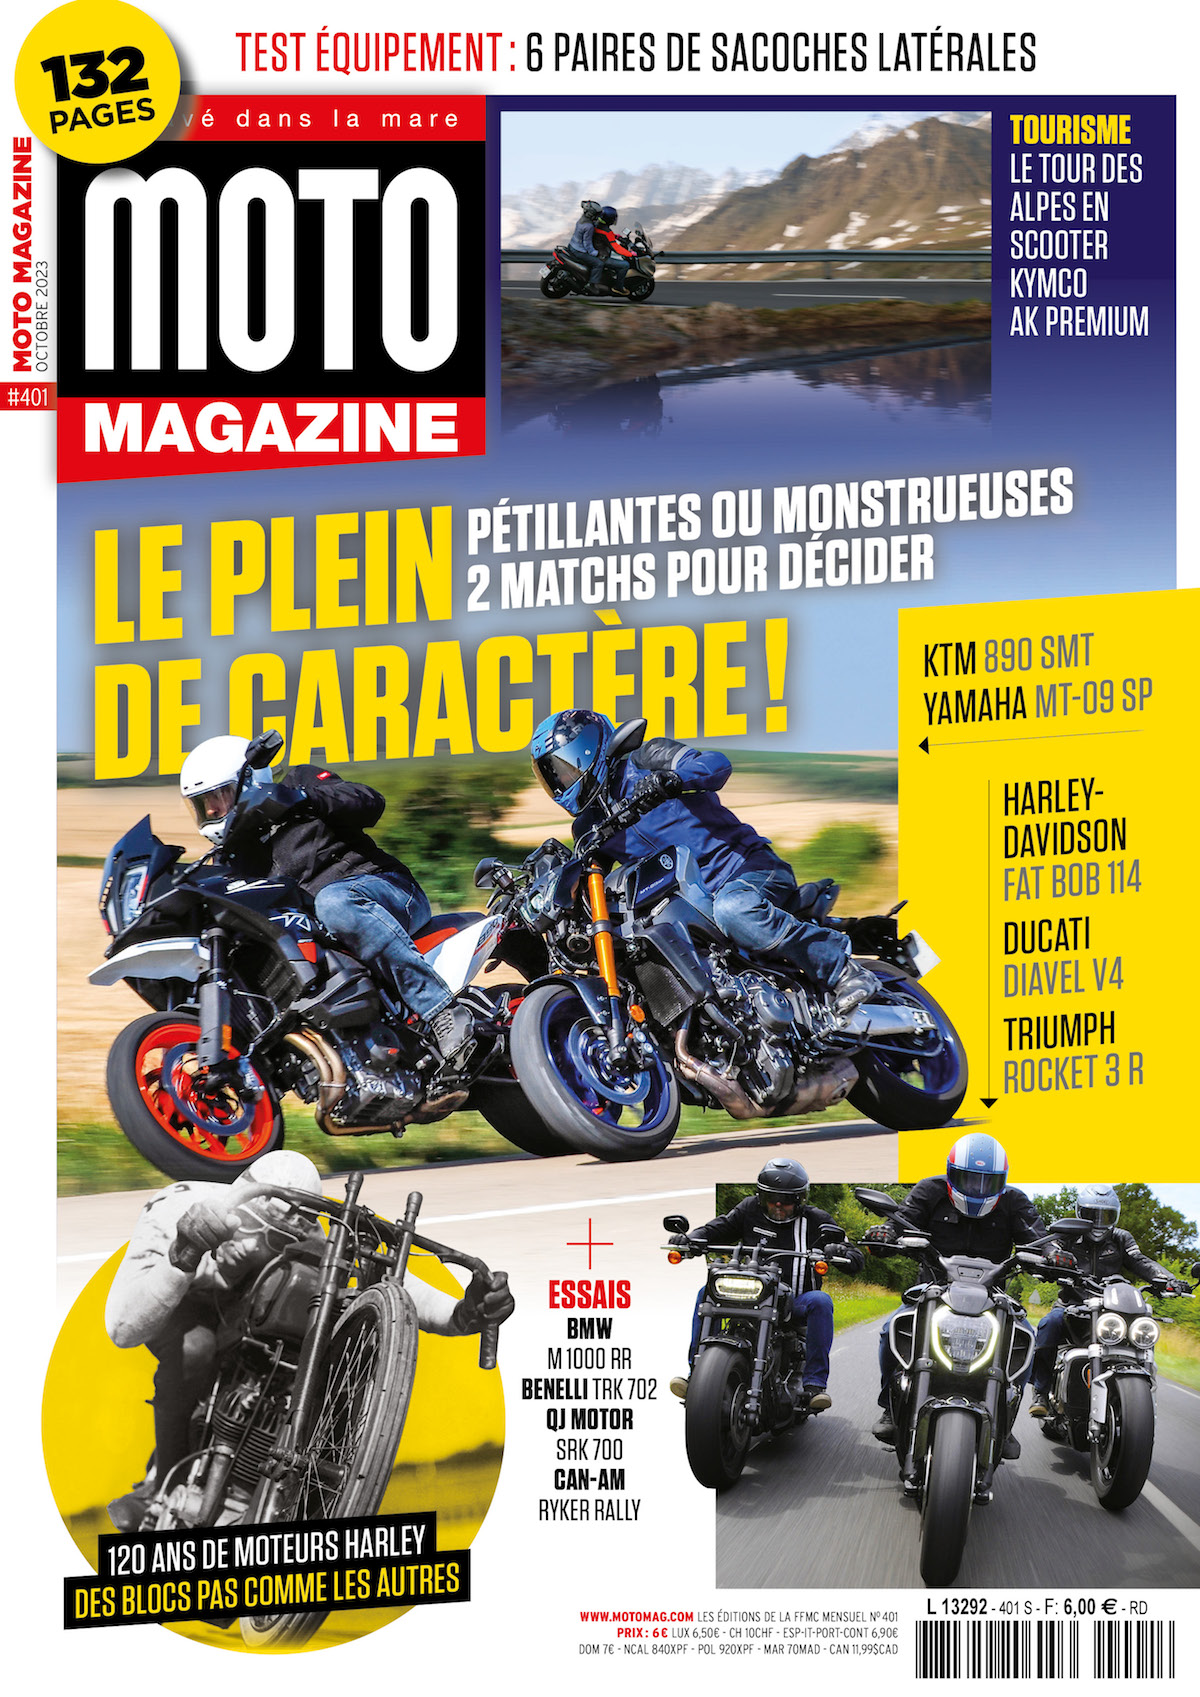 Equipement Archives - Vintage Motors Mag : Actualités, essais d'équipement  moto et scooter.